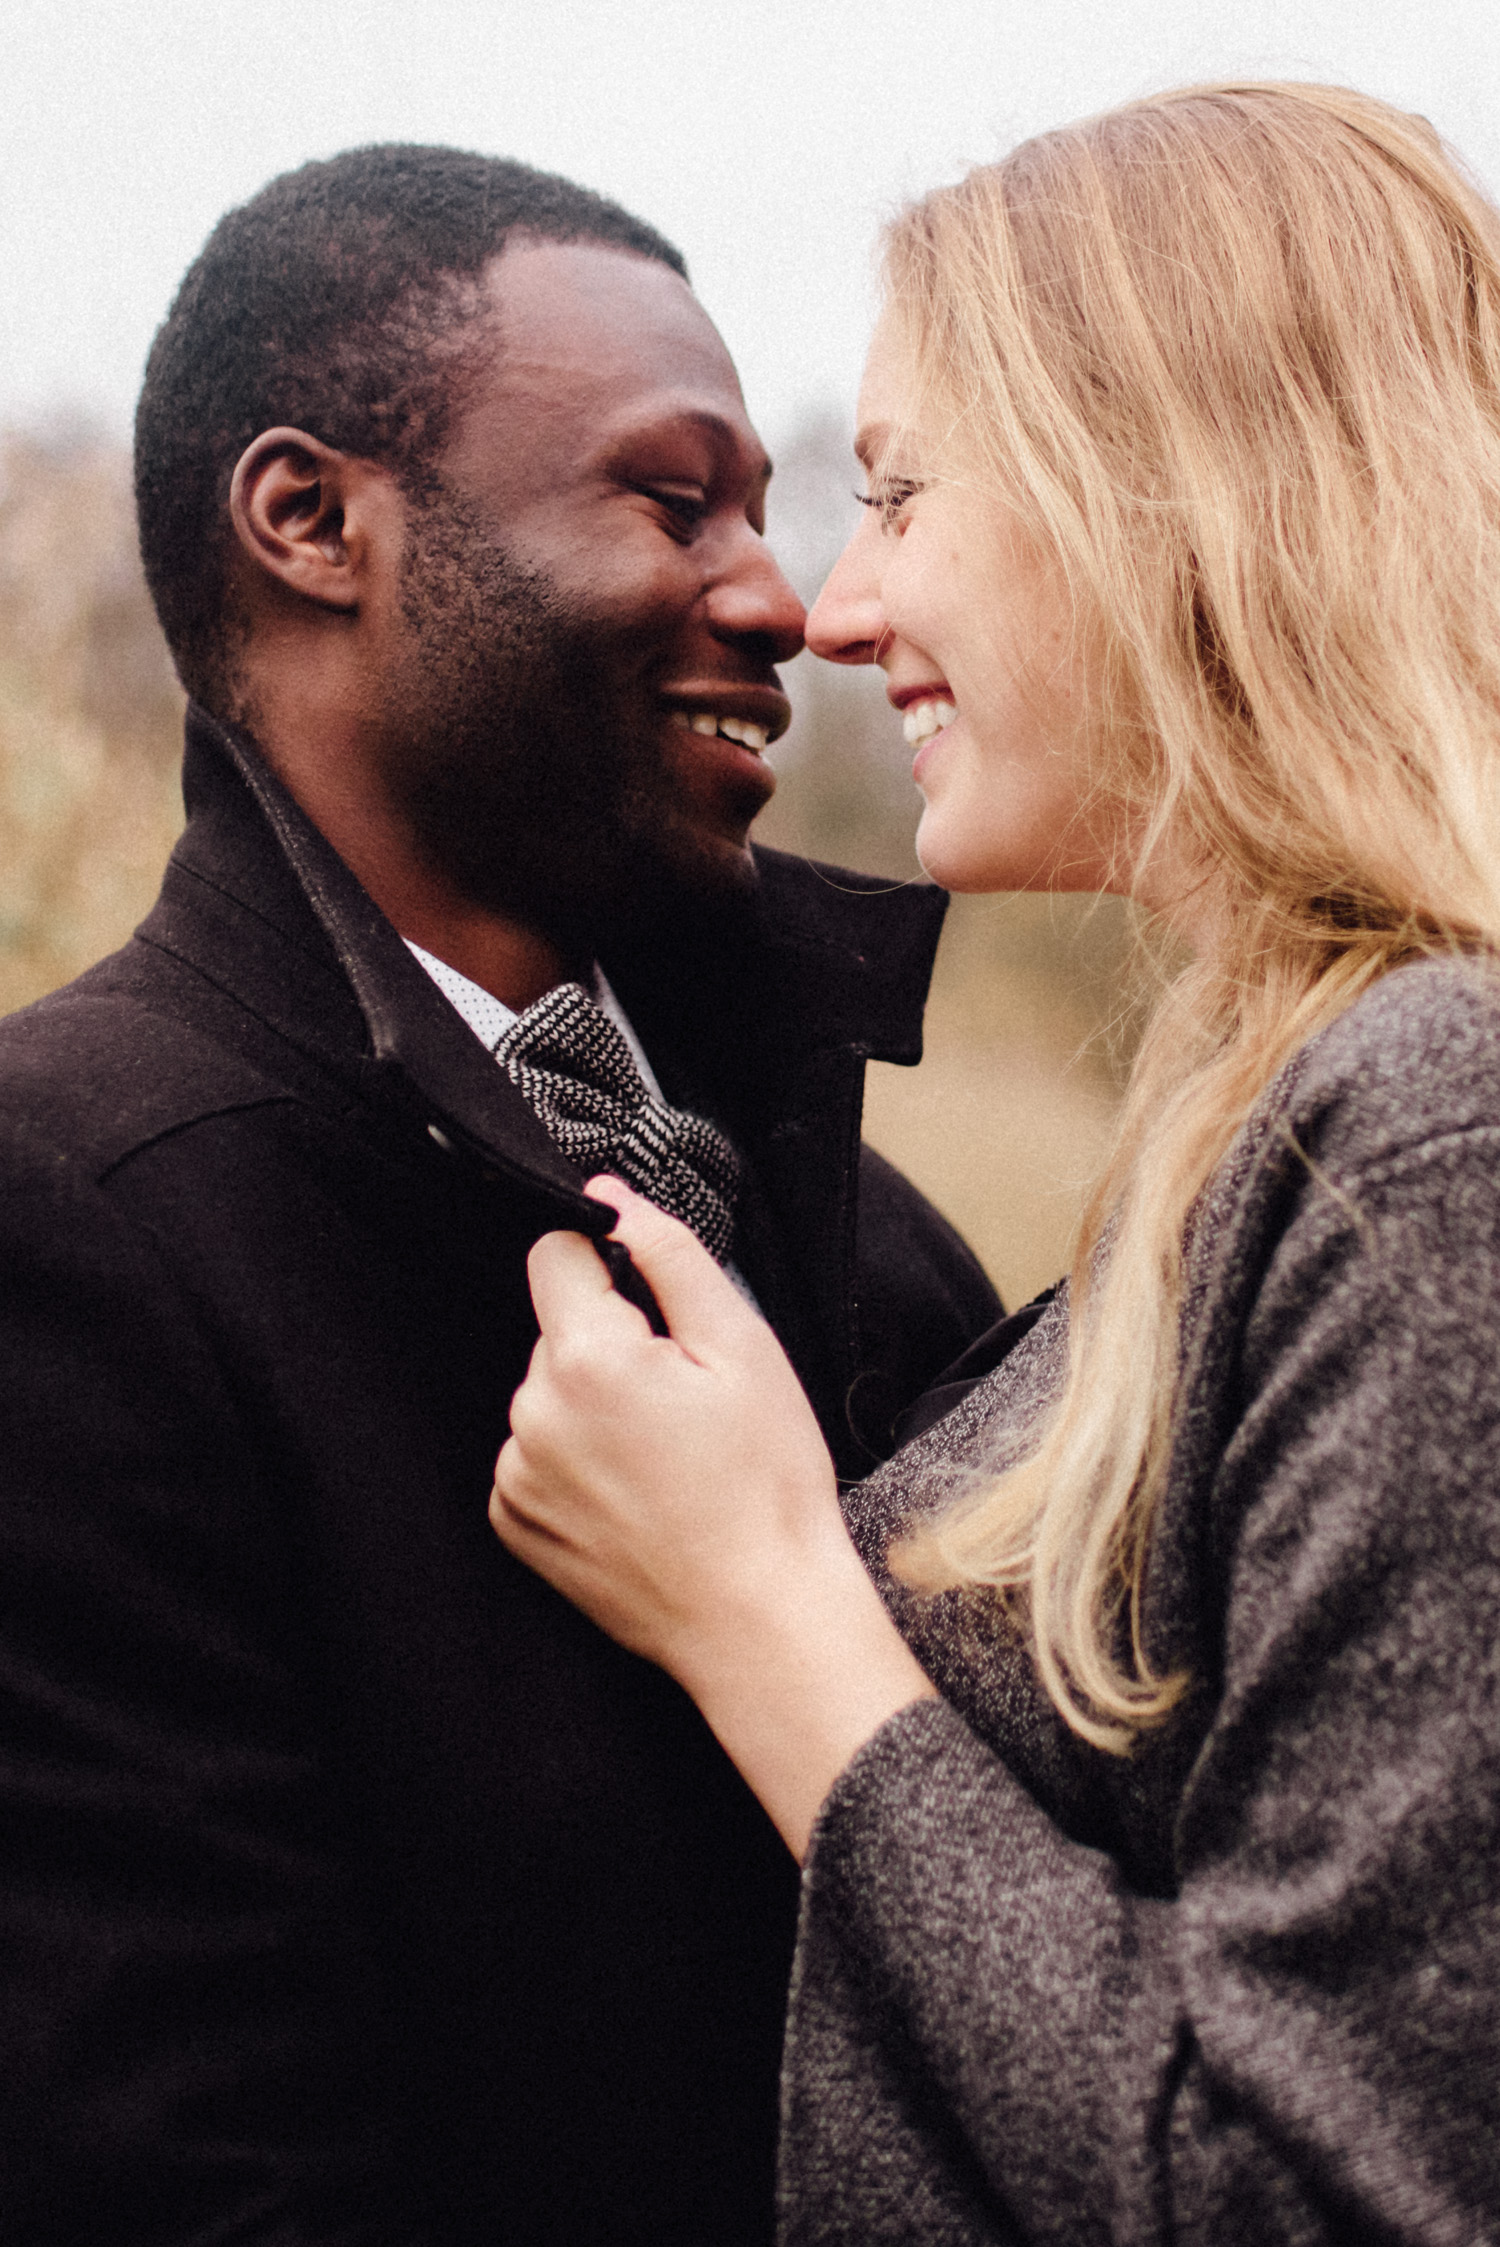 Ein verliebtes multikulturelles Paar schaut sich an und lacht.